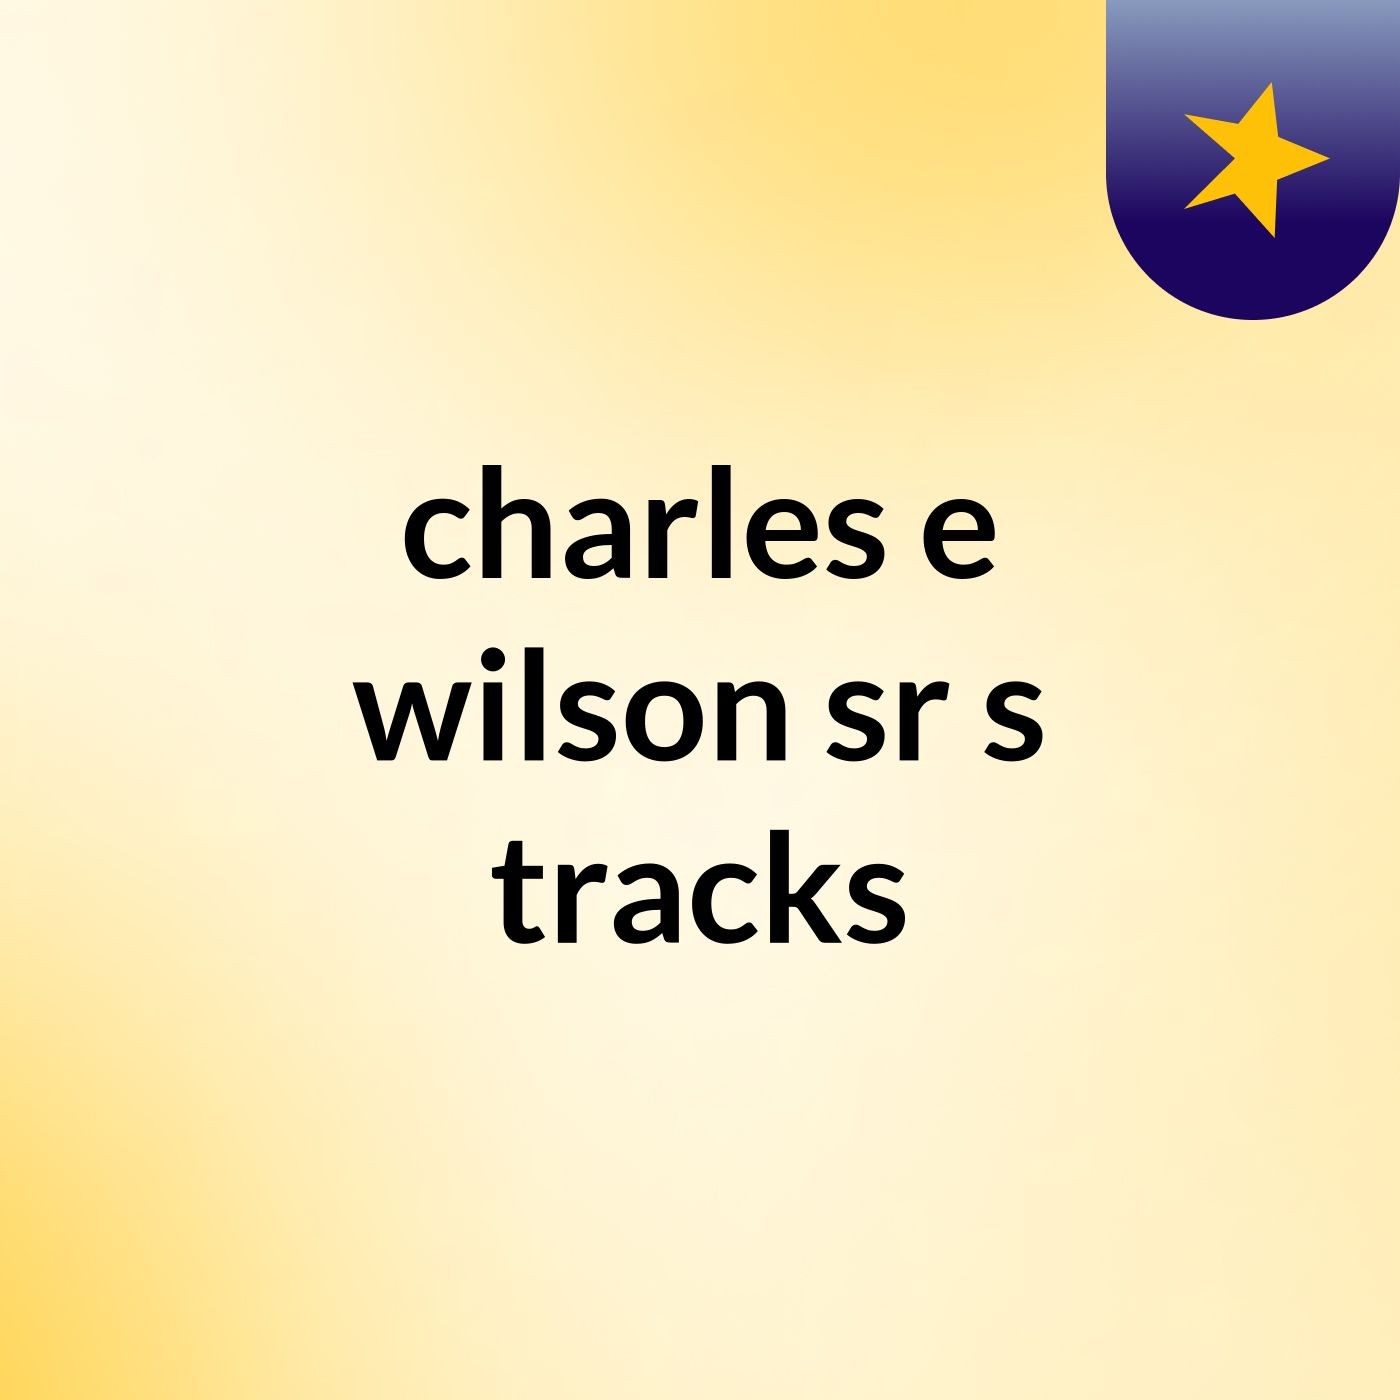 charles e wilson sr's tracks